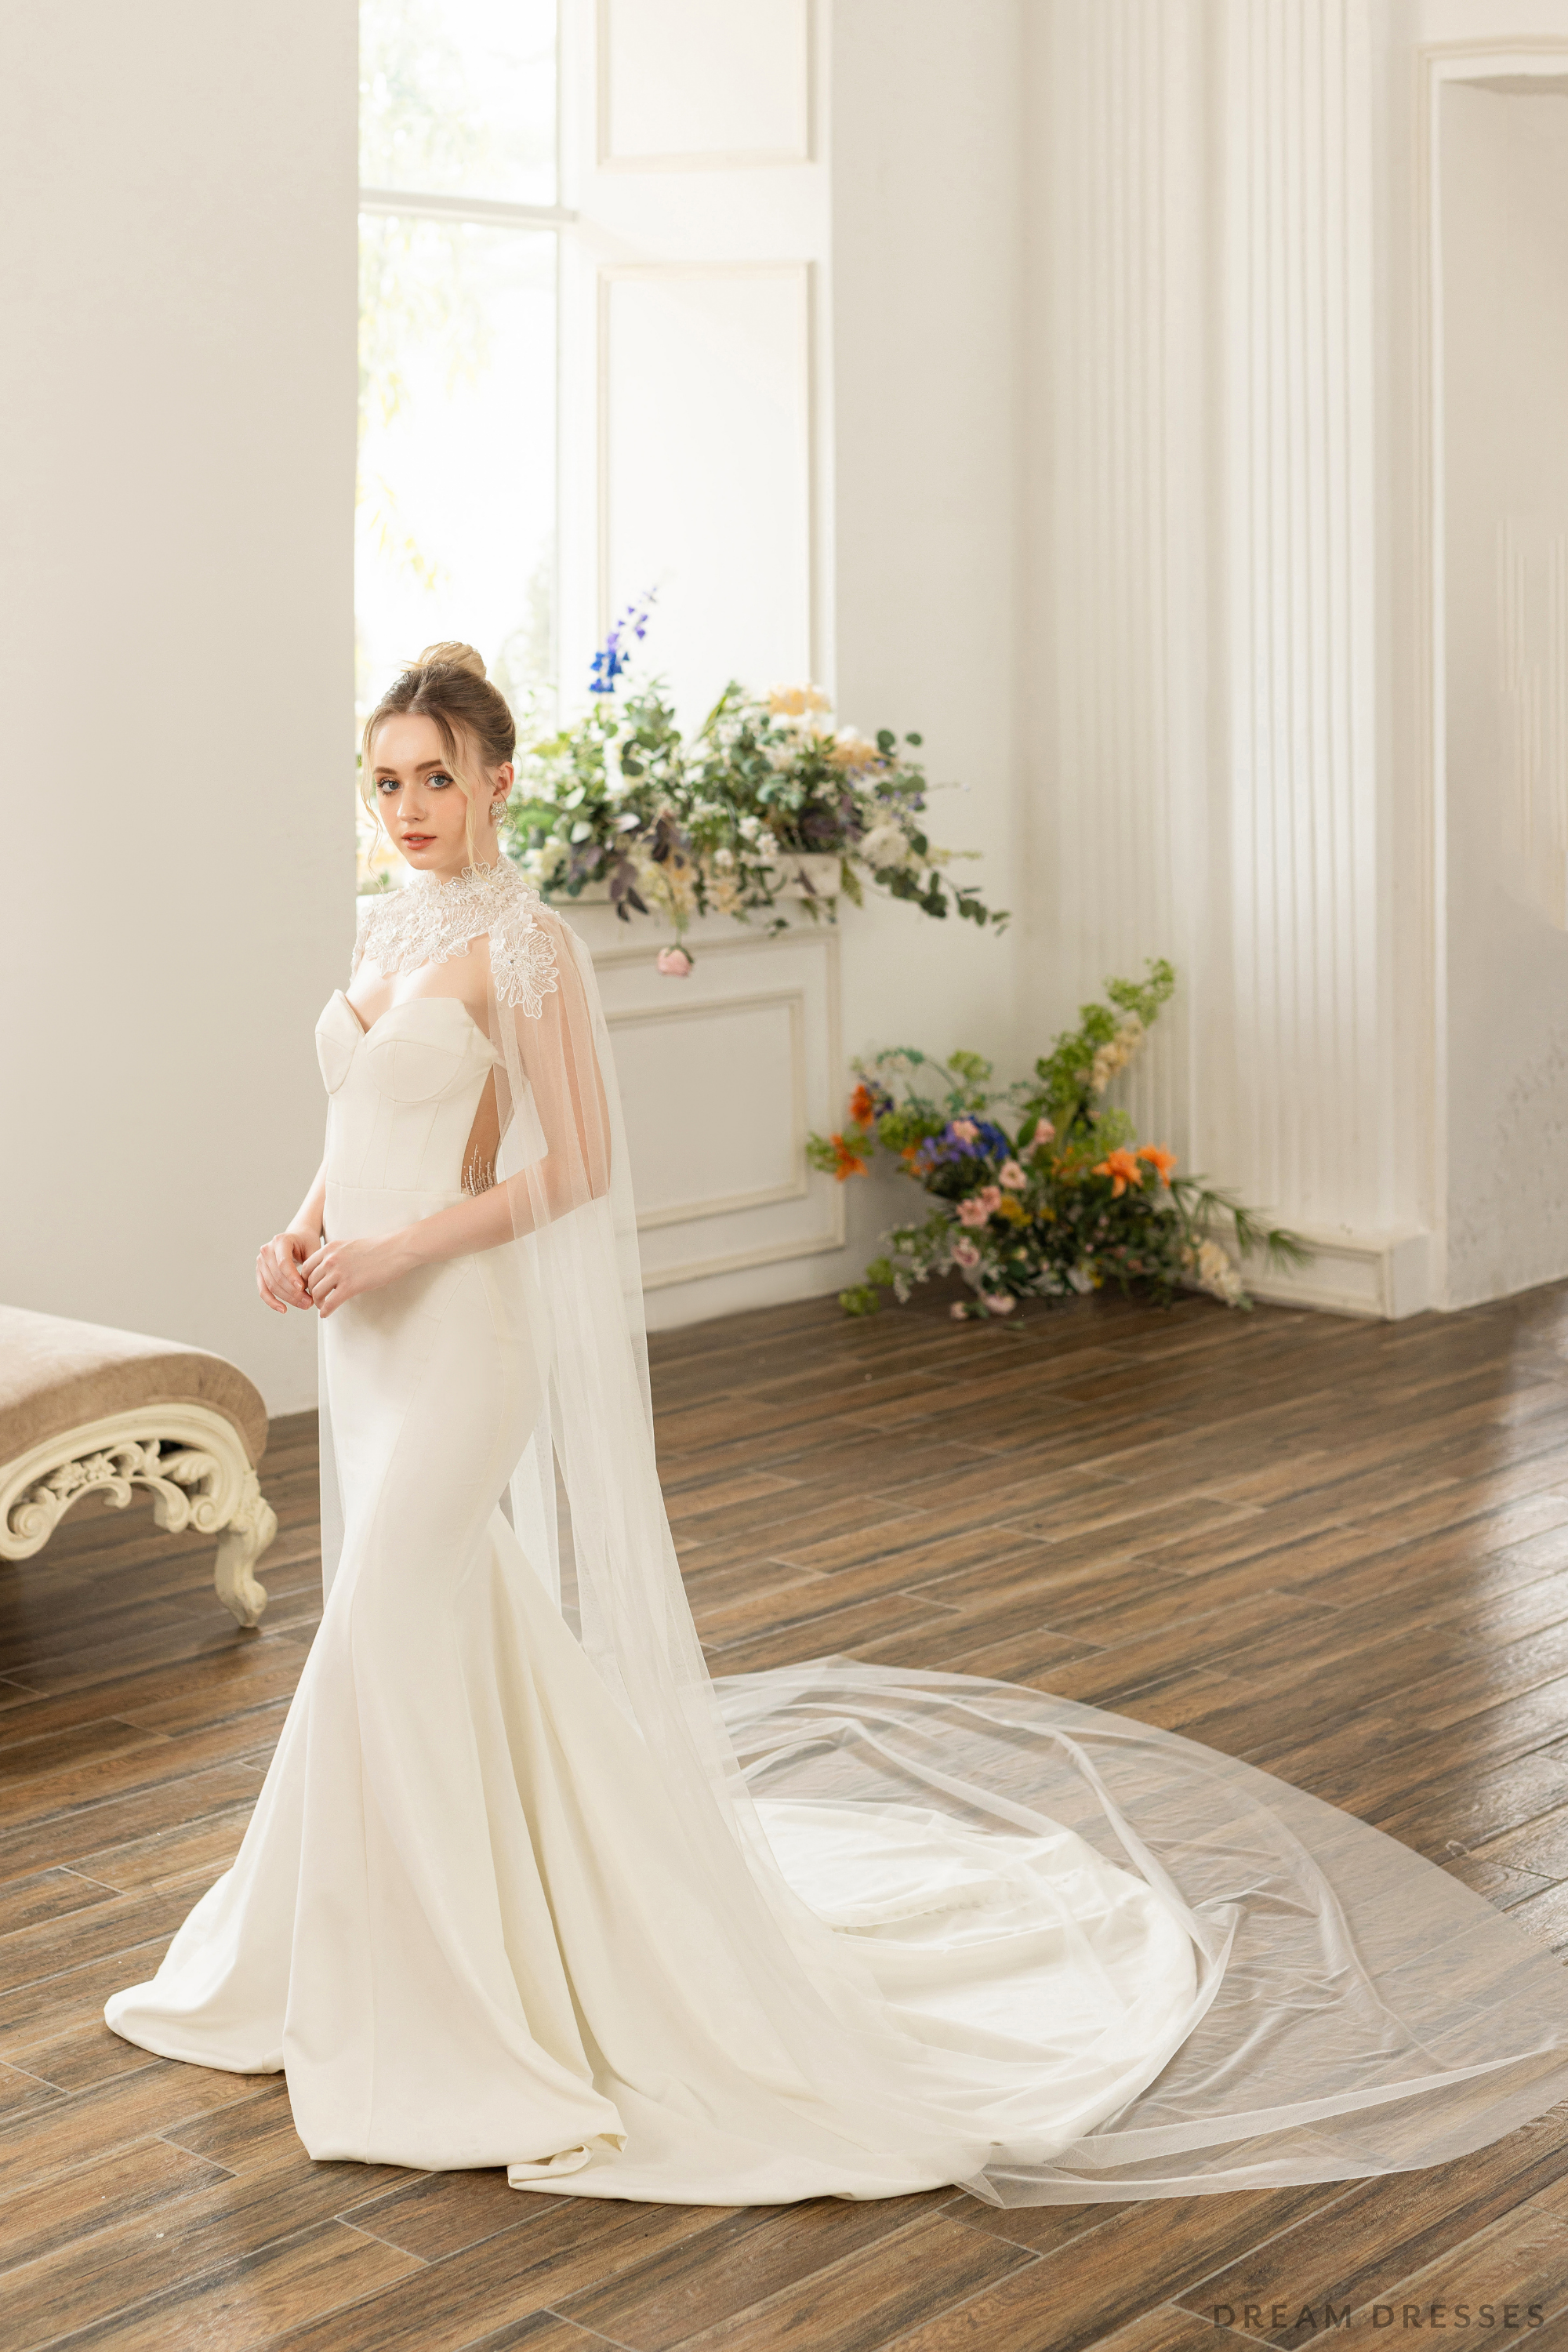 Couture Floral Lace Bridal Cape (#ELOSIA)